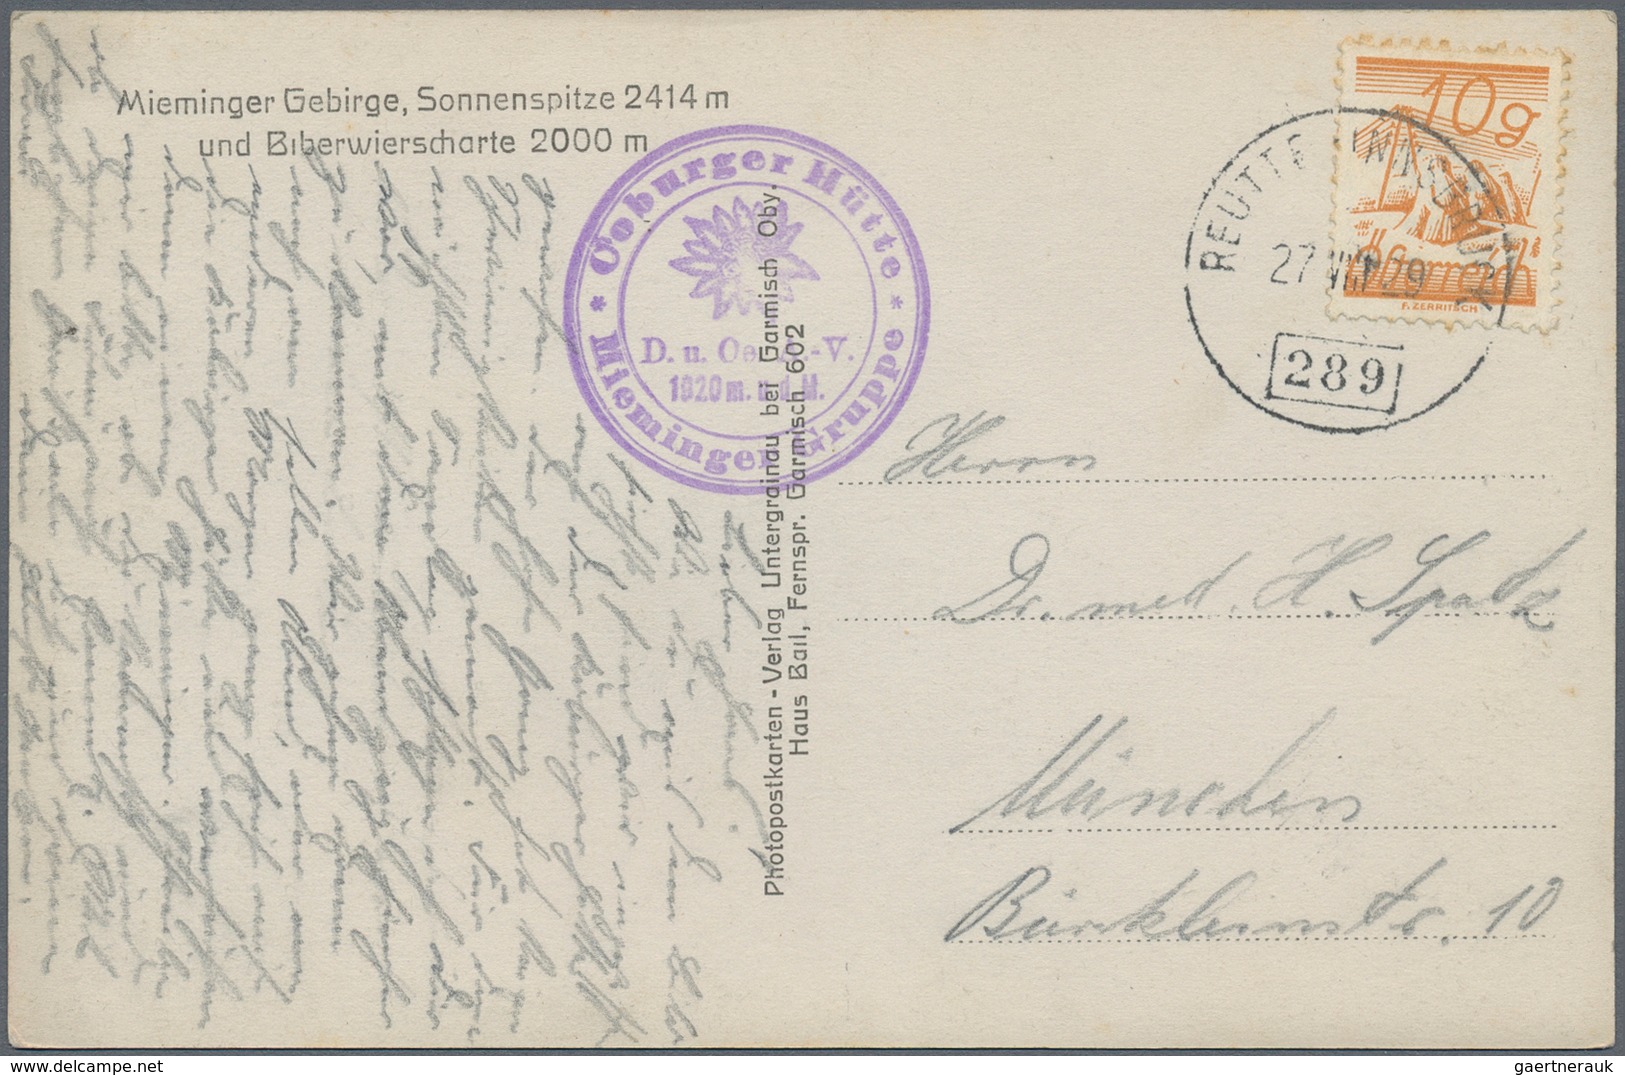 Österreich: 1860/1990 (ca.), meist bis 1960, Posten von nach Angaben ca. 250 Briefen, Karten, Ganzsa